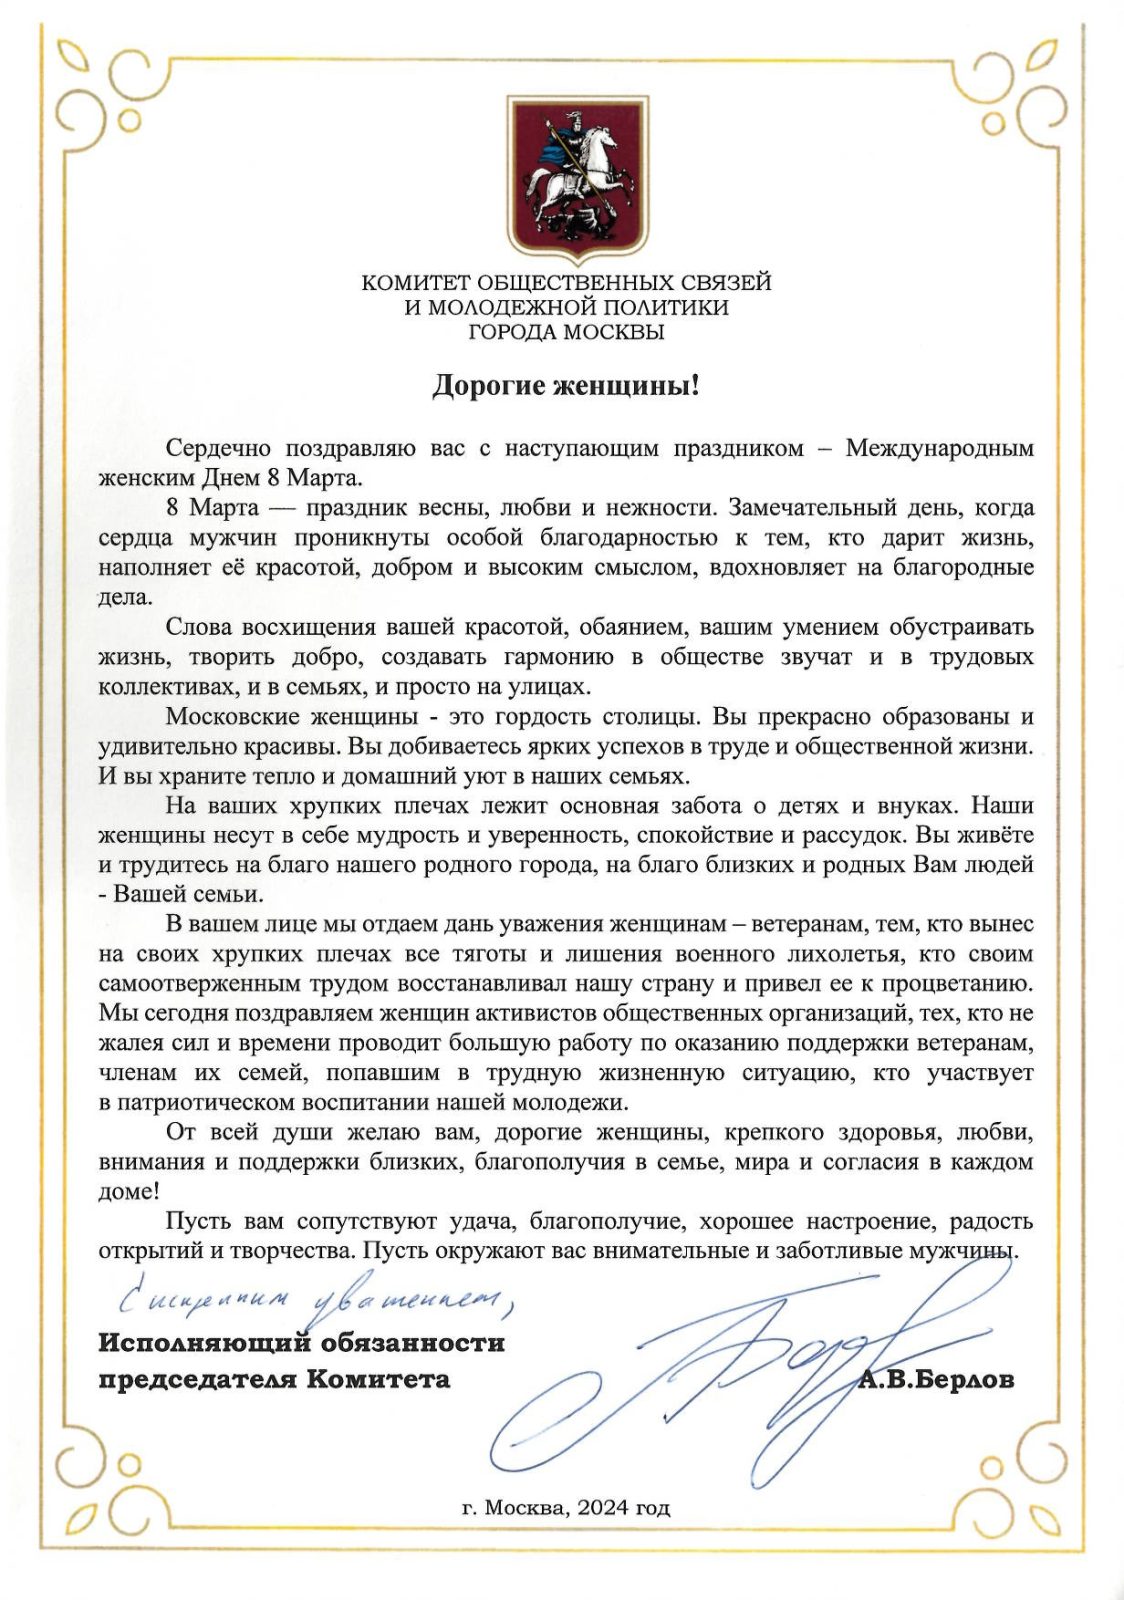 Поздравление Комитета общественных связей и молодежной политики города Москвы с праздником Днём 8 Марта